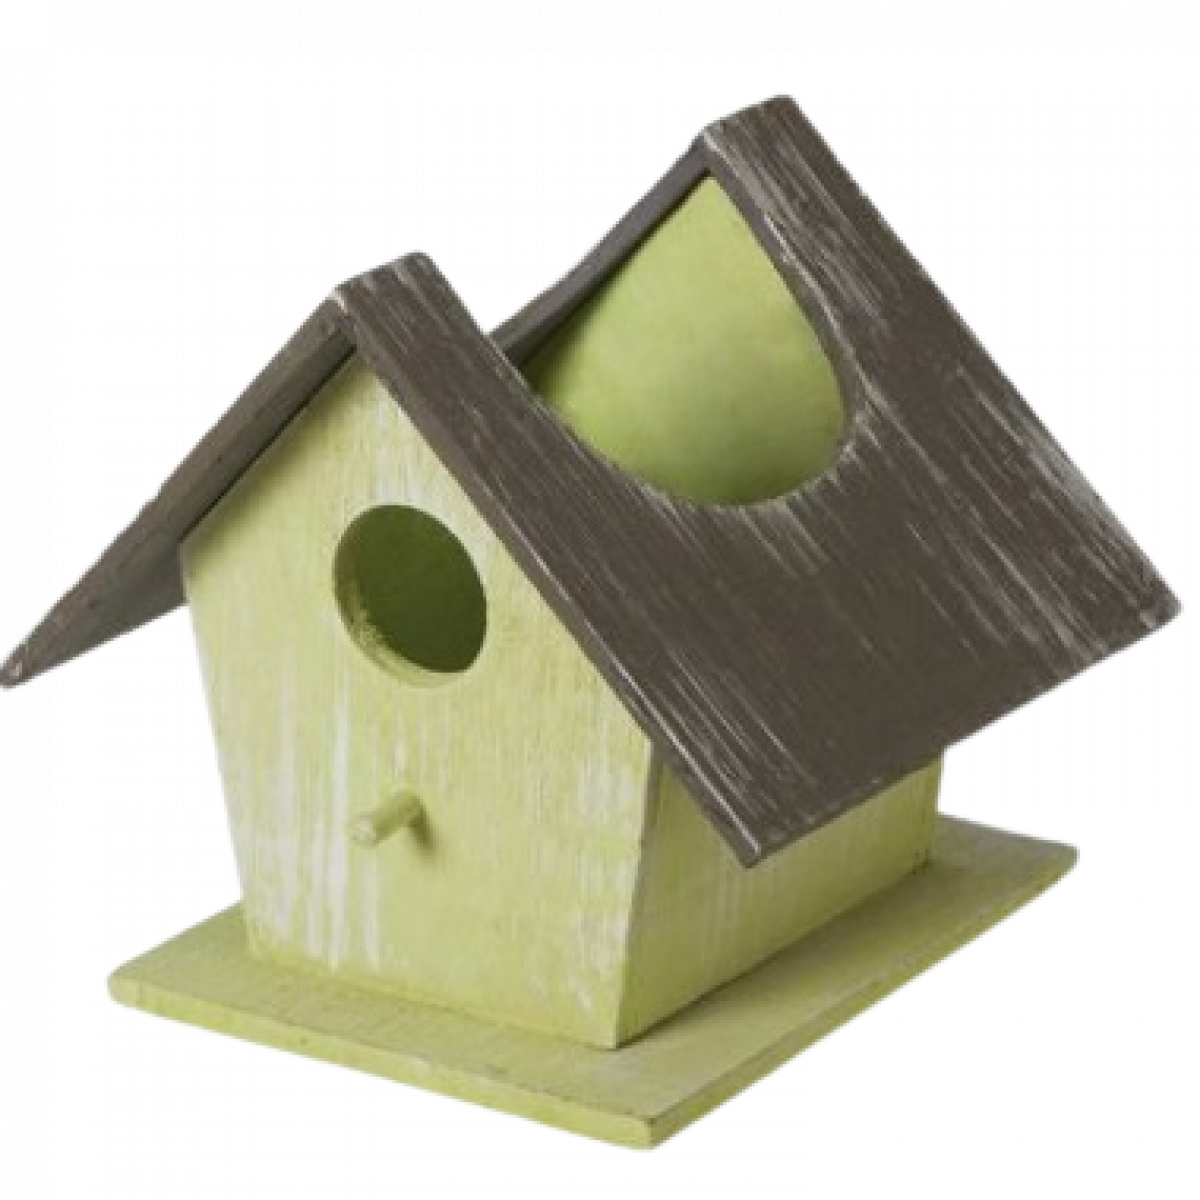 5309 Wooden Bird House Green & Brown